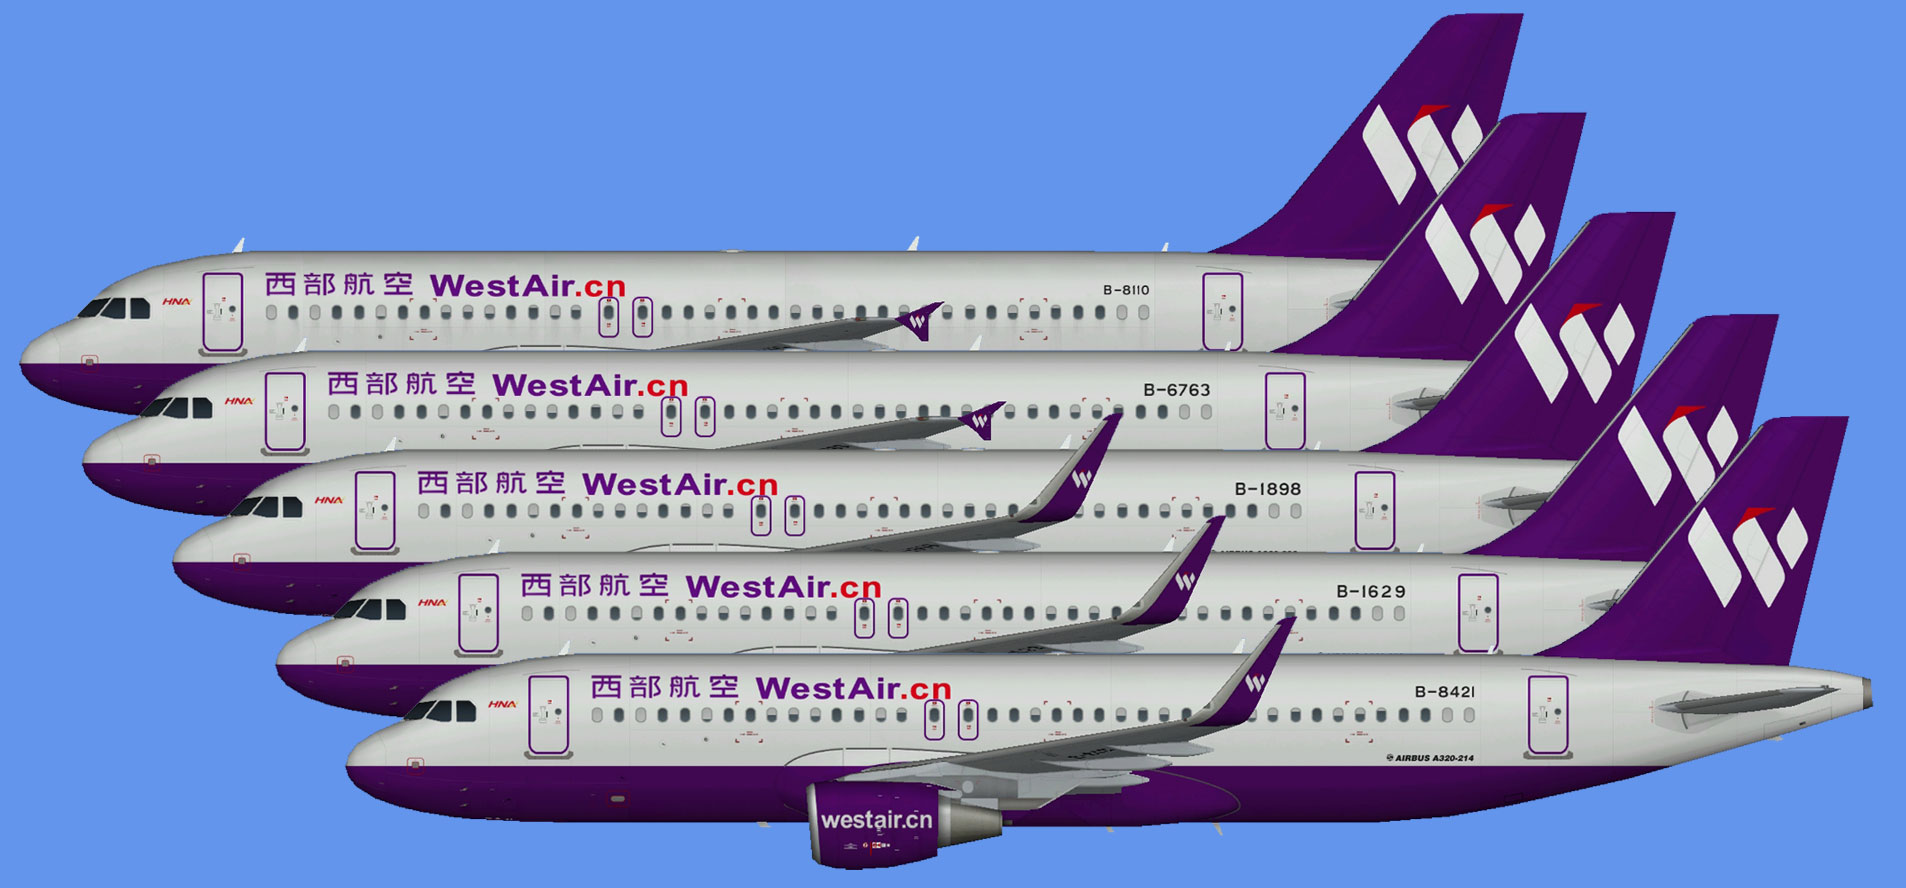 West Air Airbus A320 NC